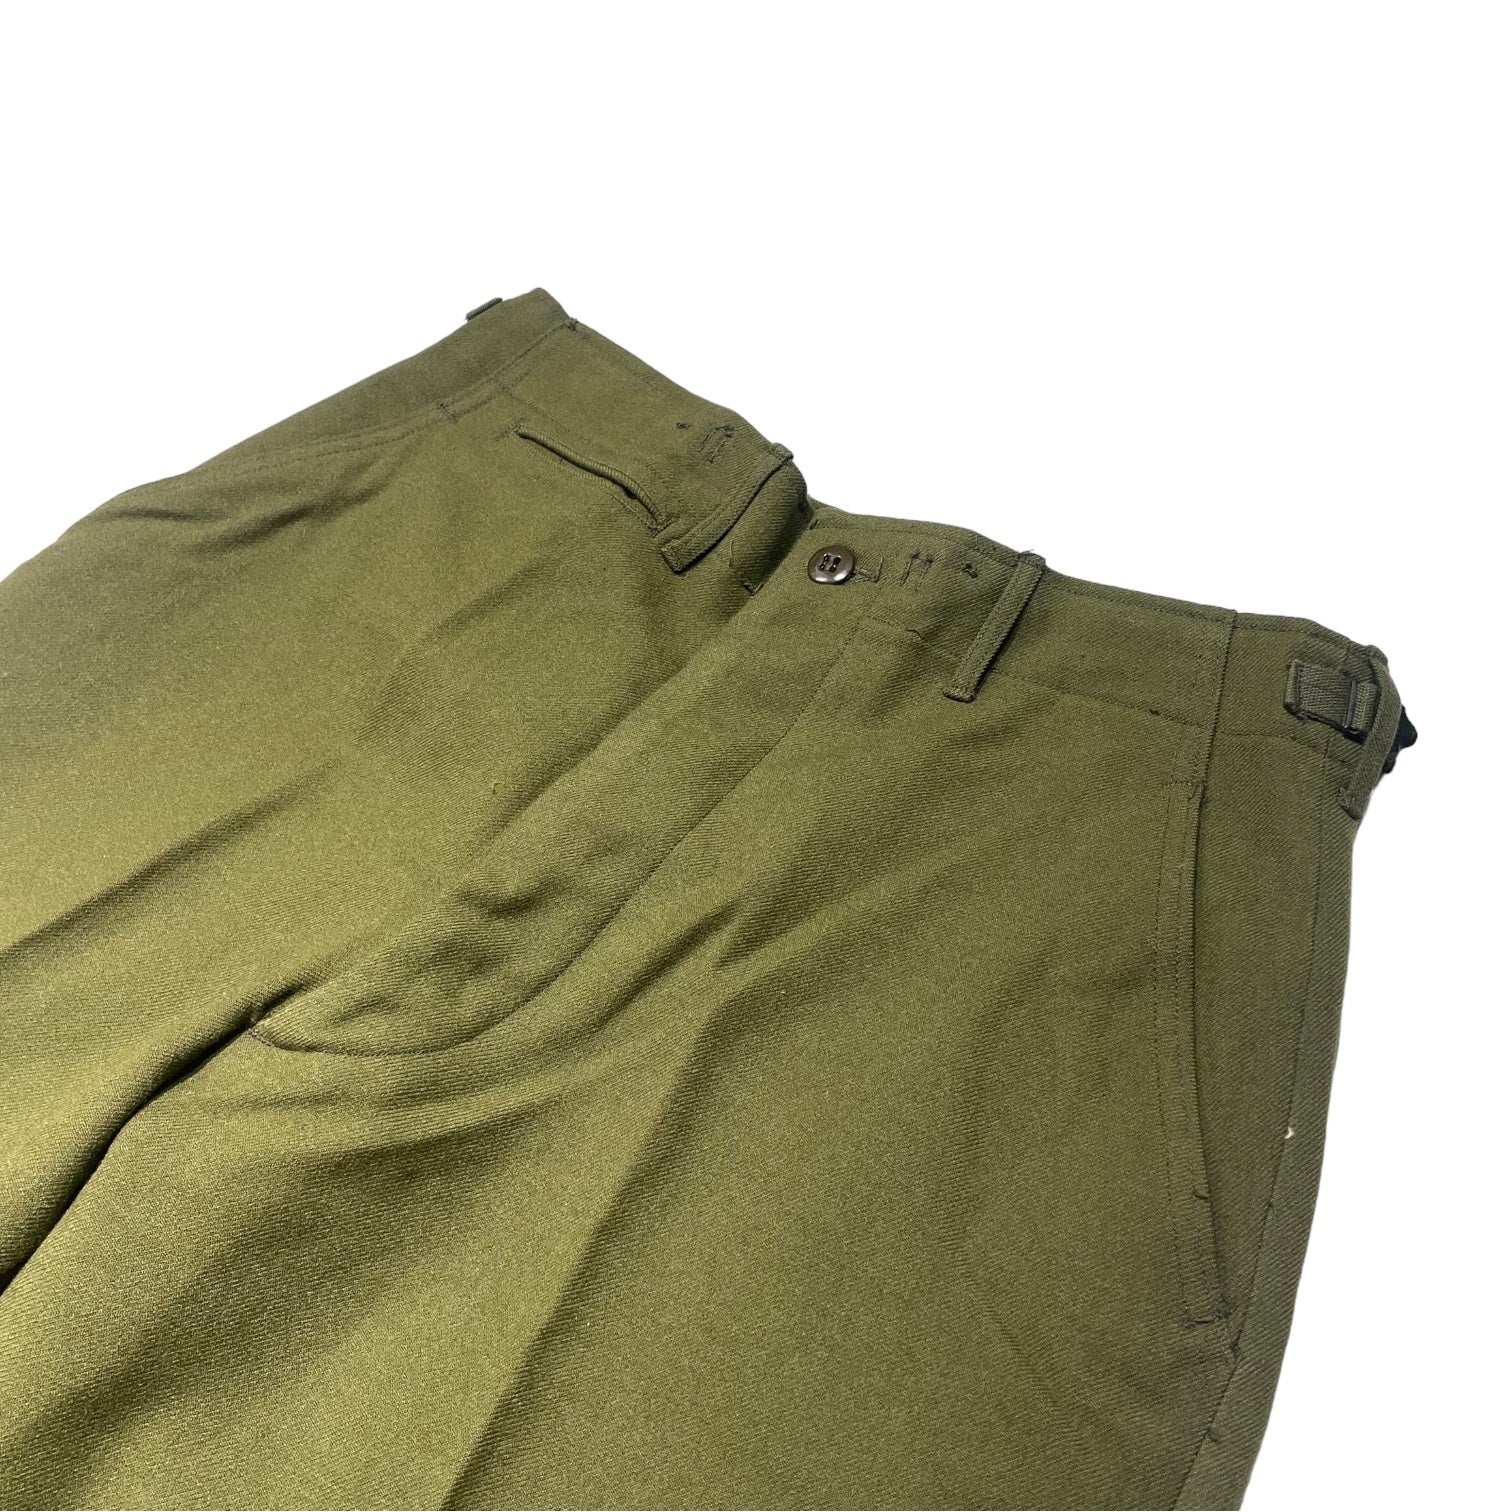 US ARMY(アメリカ軍) M-1951 wool trousers ミリタリー ウール パンツ 55-T-35650-40 SMALL REGULAR カーキ スラックス